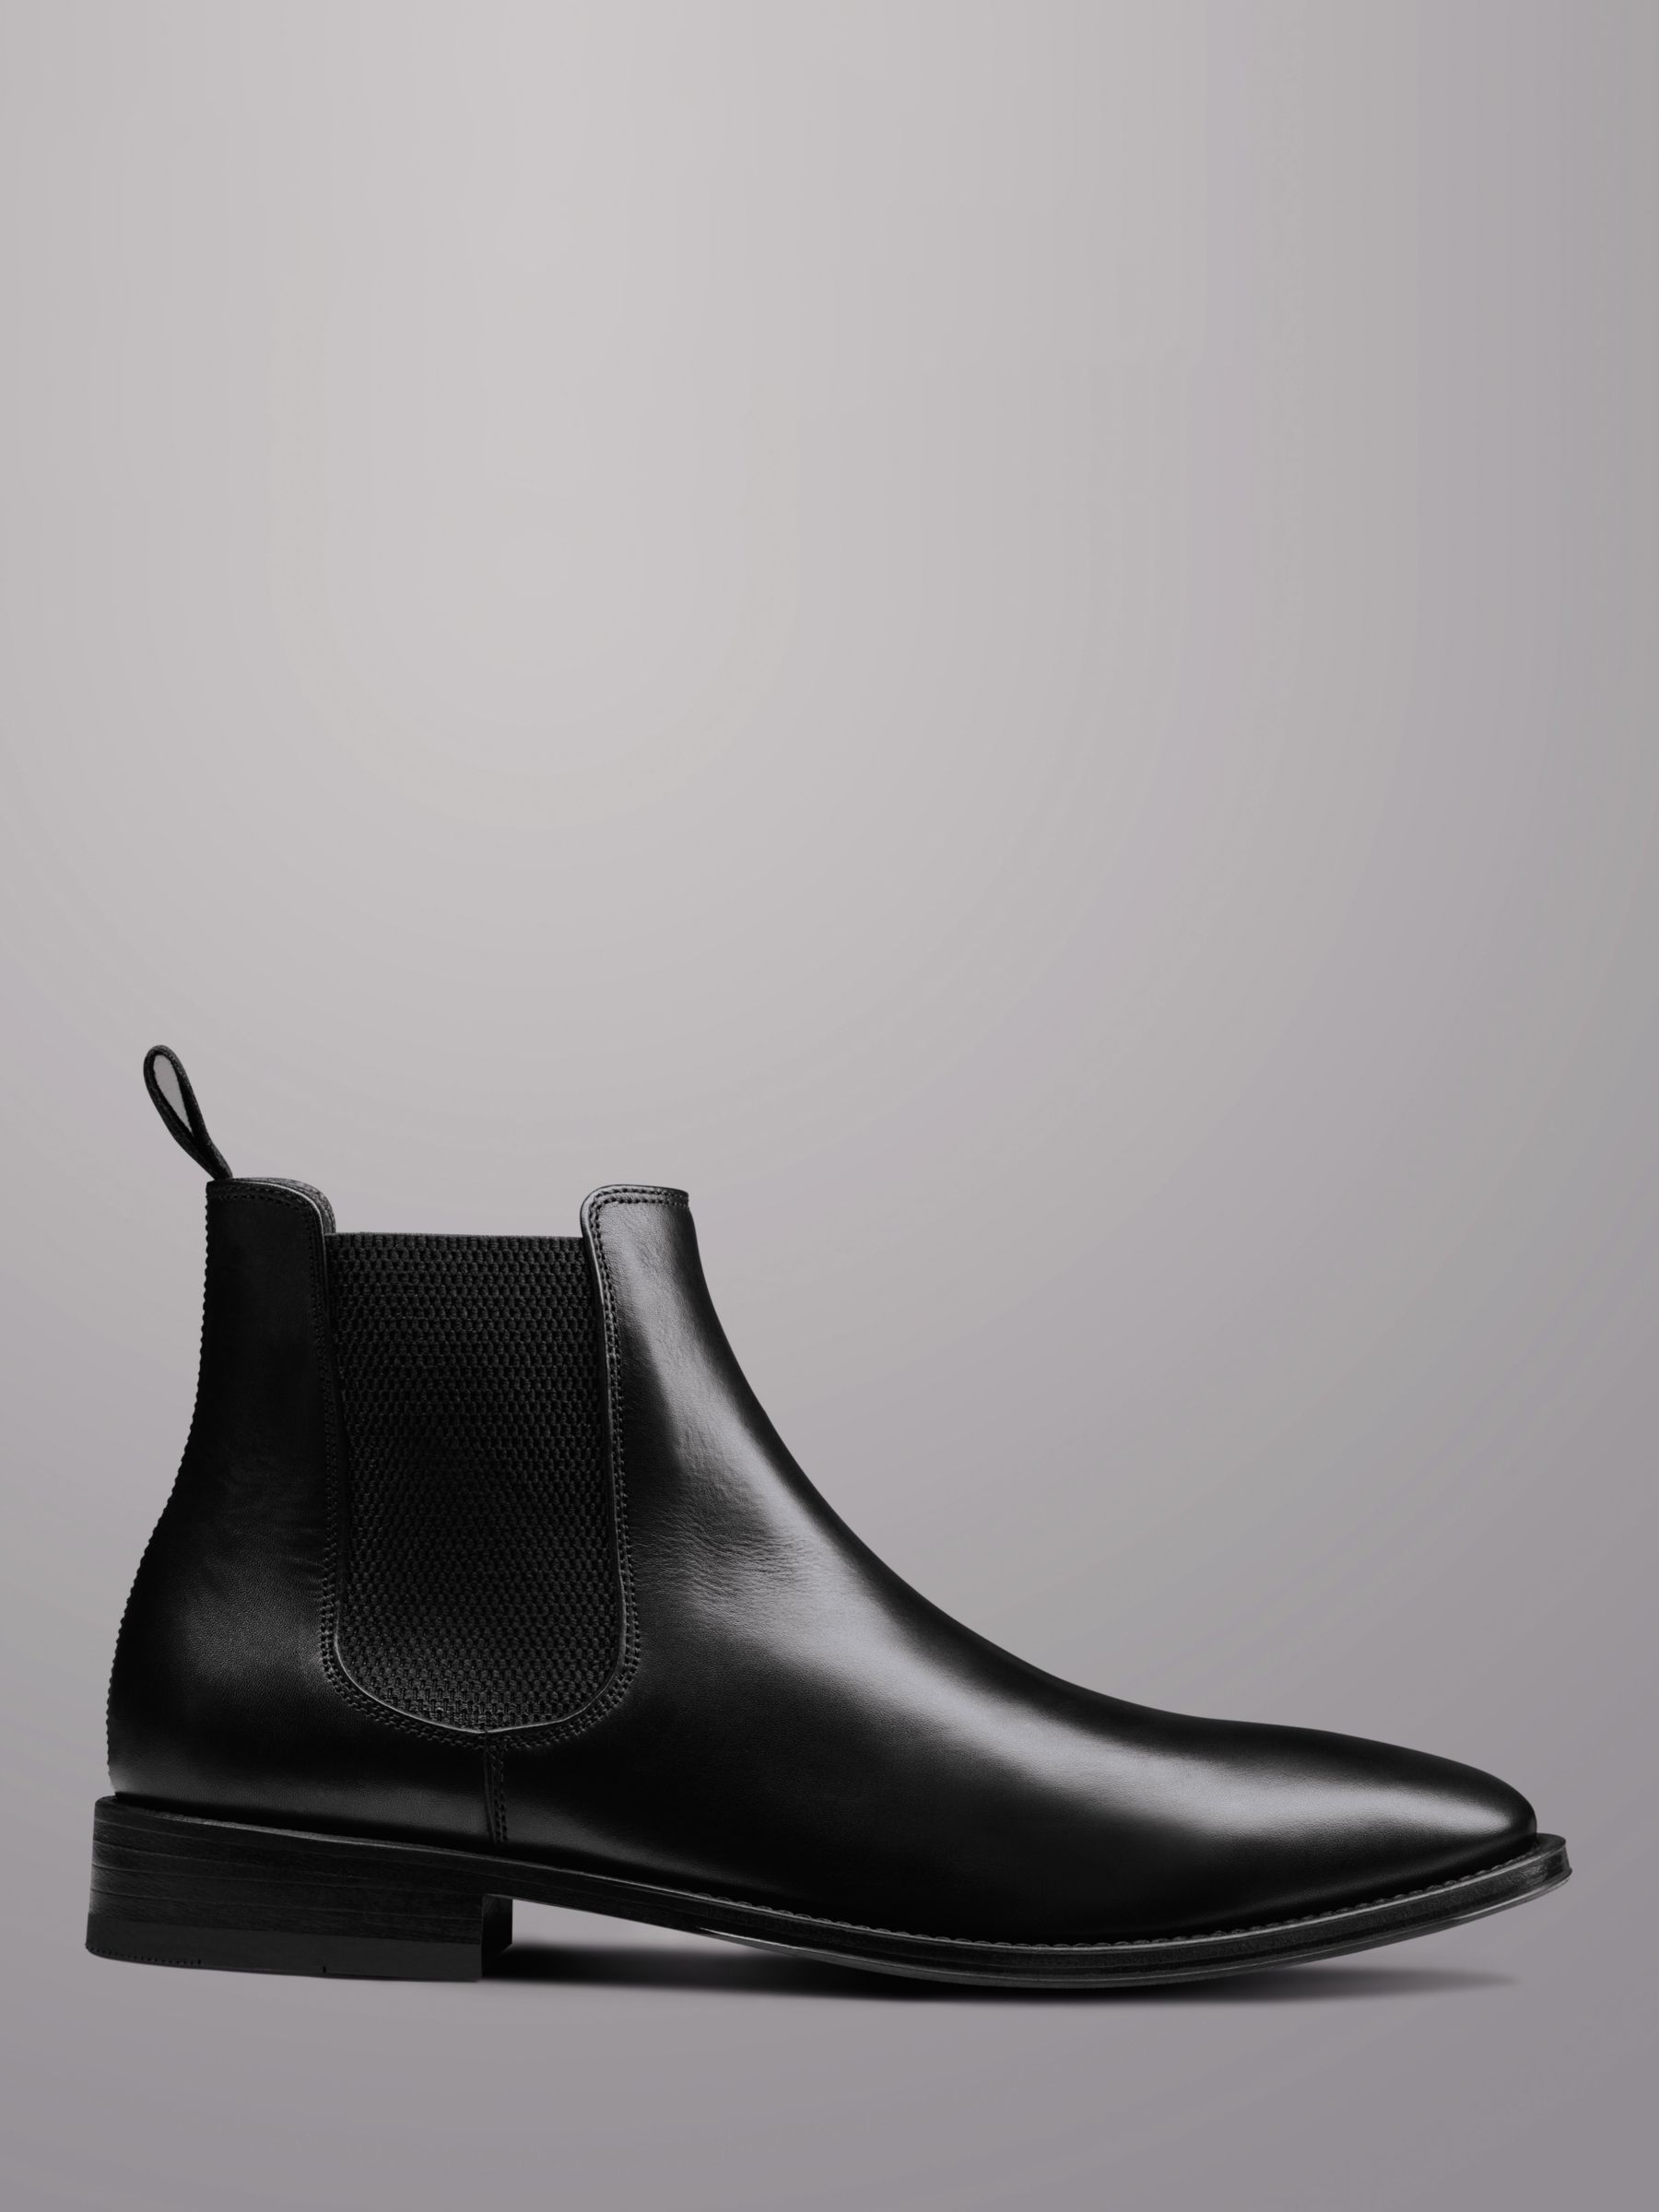 Charles Tyrwhitt Leather Chelsea Boots, Black, 10